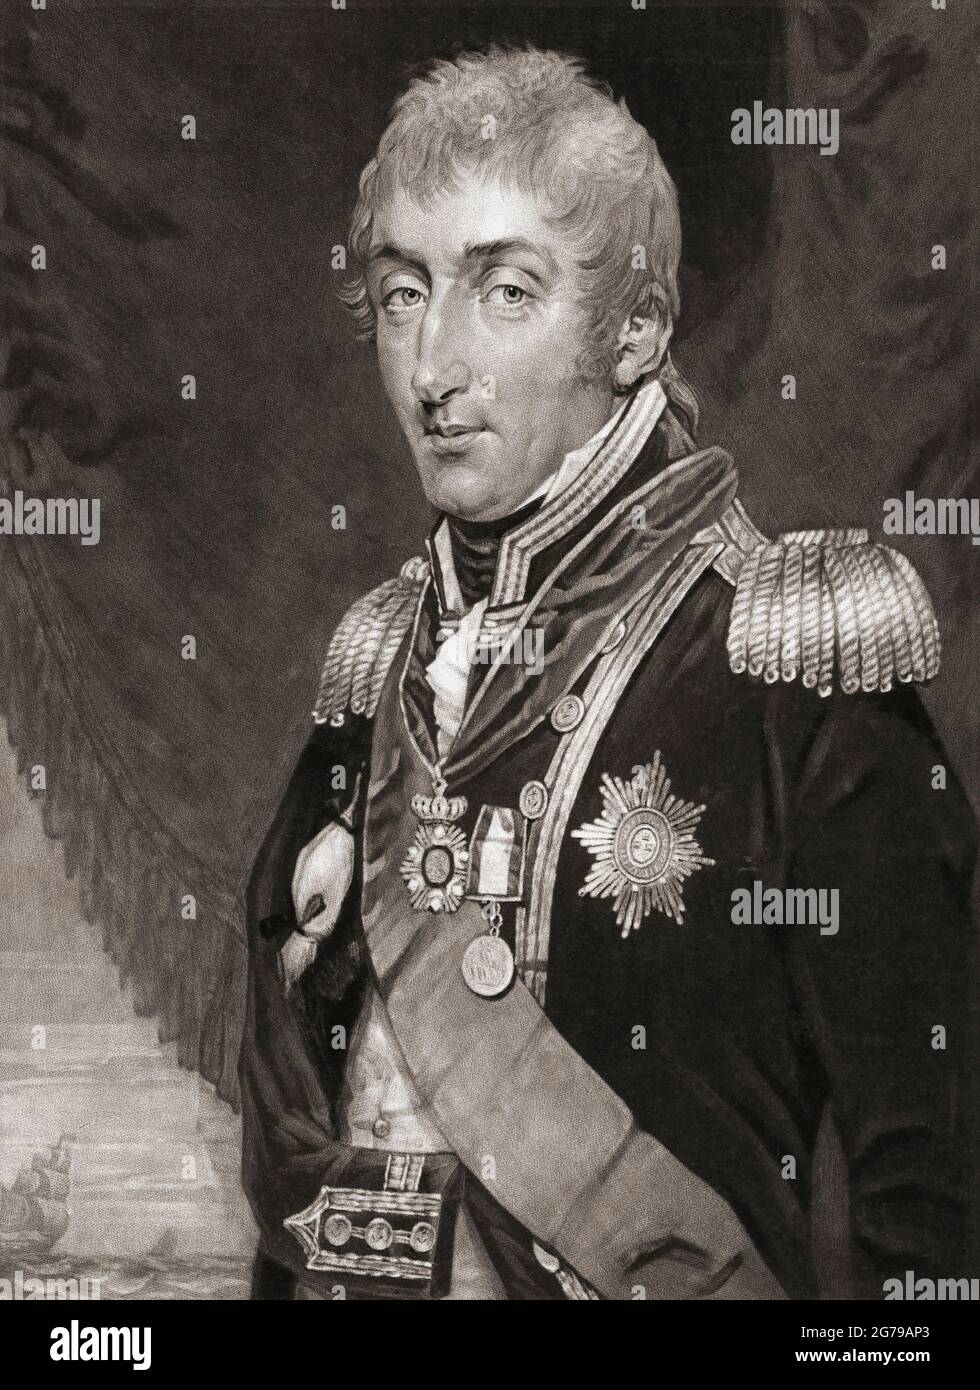 Sir Samuel Hood, 1724 - 1816. Viscount-Haube. Englischer Admiral in der Royal Navy. Er kämpfte in mehreren Feldzügen, darunter dem amerikanischen Revolutionskrieg, und wurde zum ersten Marineherrn ernannt. Nach einem zeitgenössischen Porträt. Stockfoto